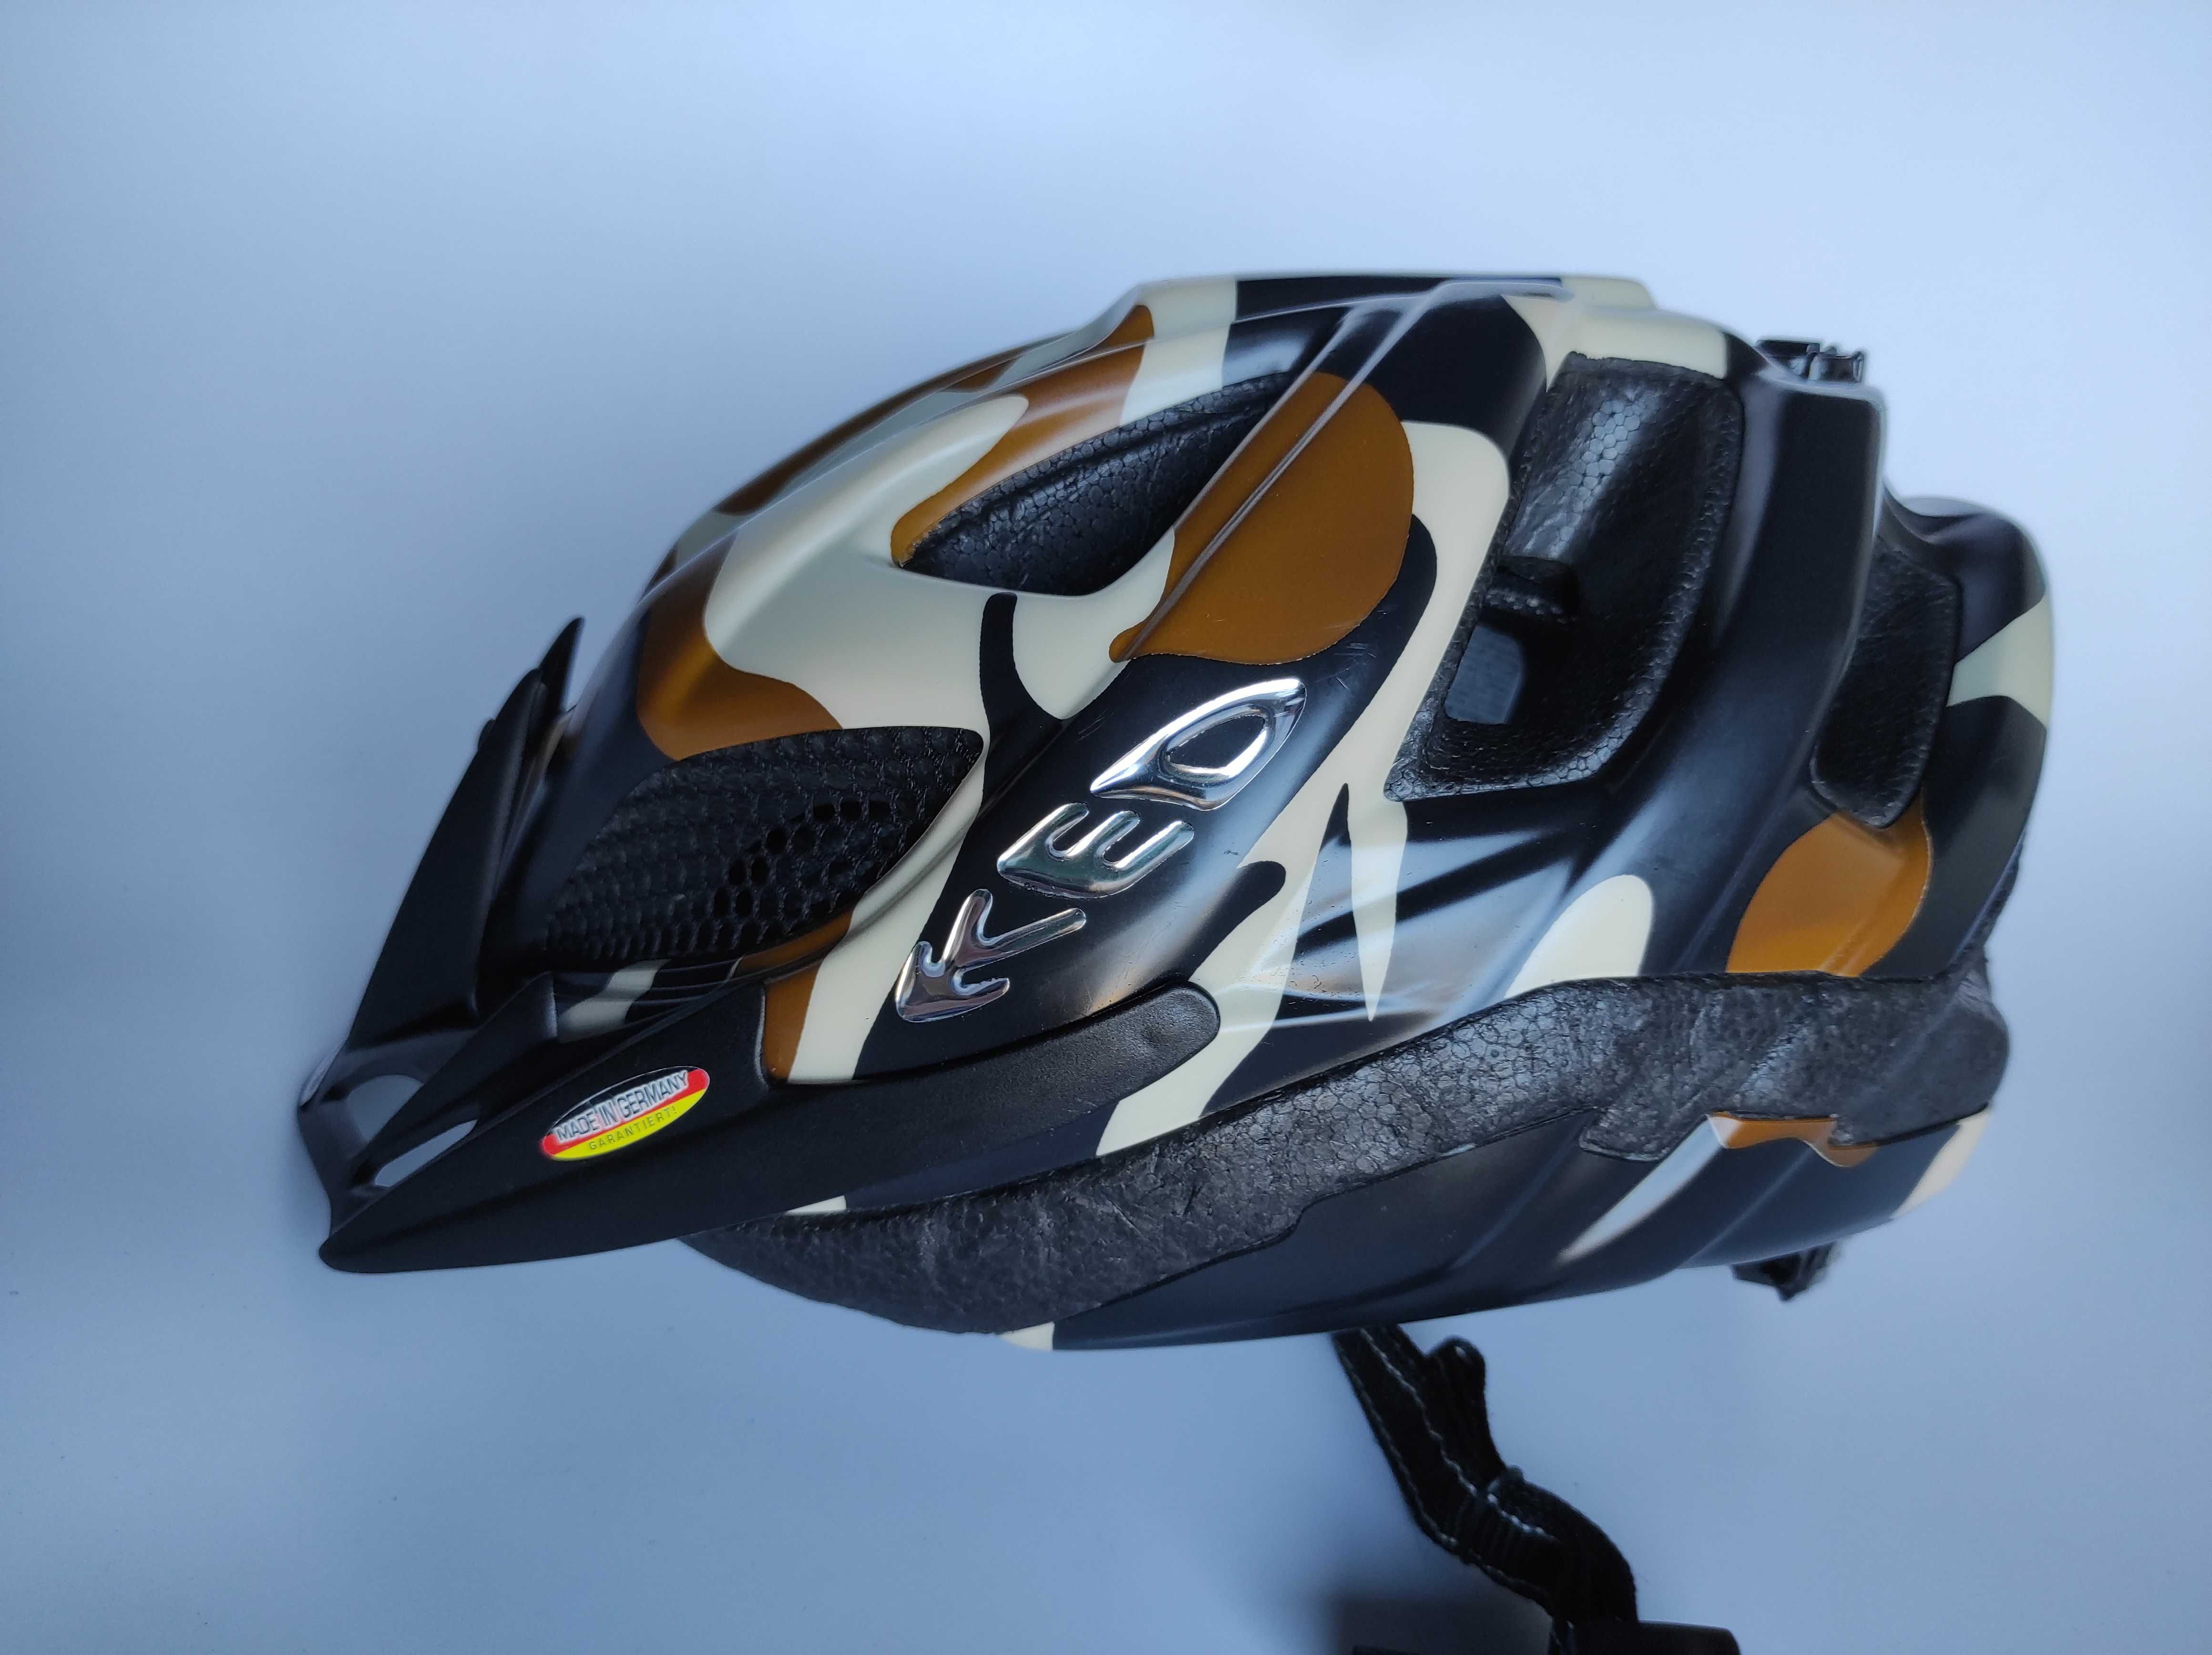 Шлем защитный KED Fazer Junior, размер 53-58см, велосипедный